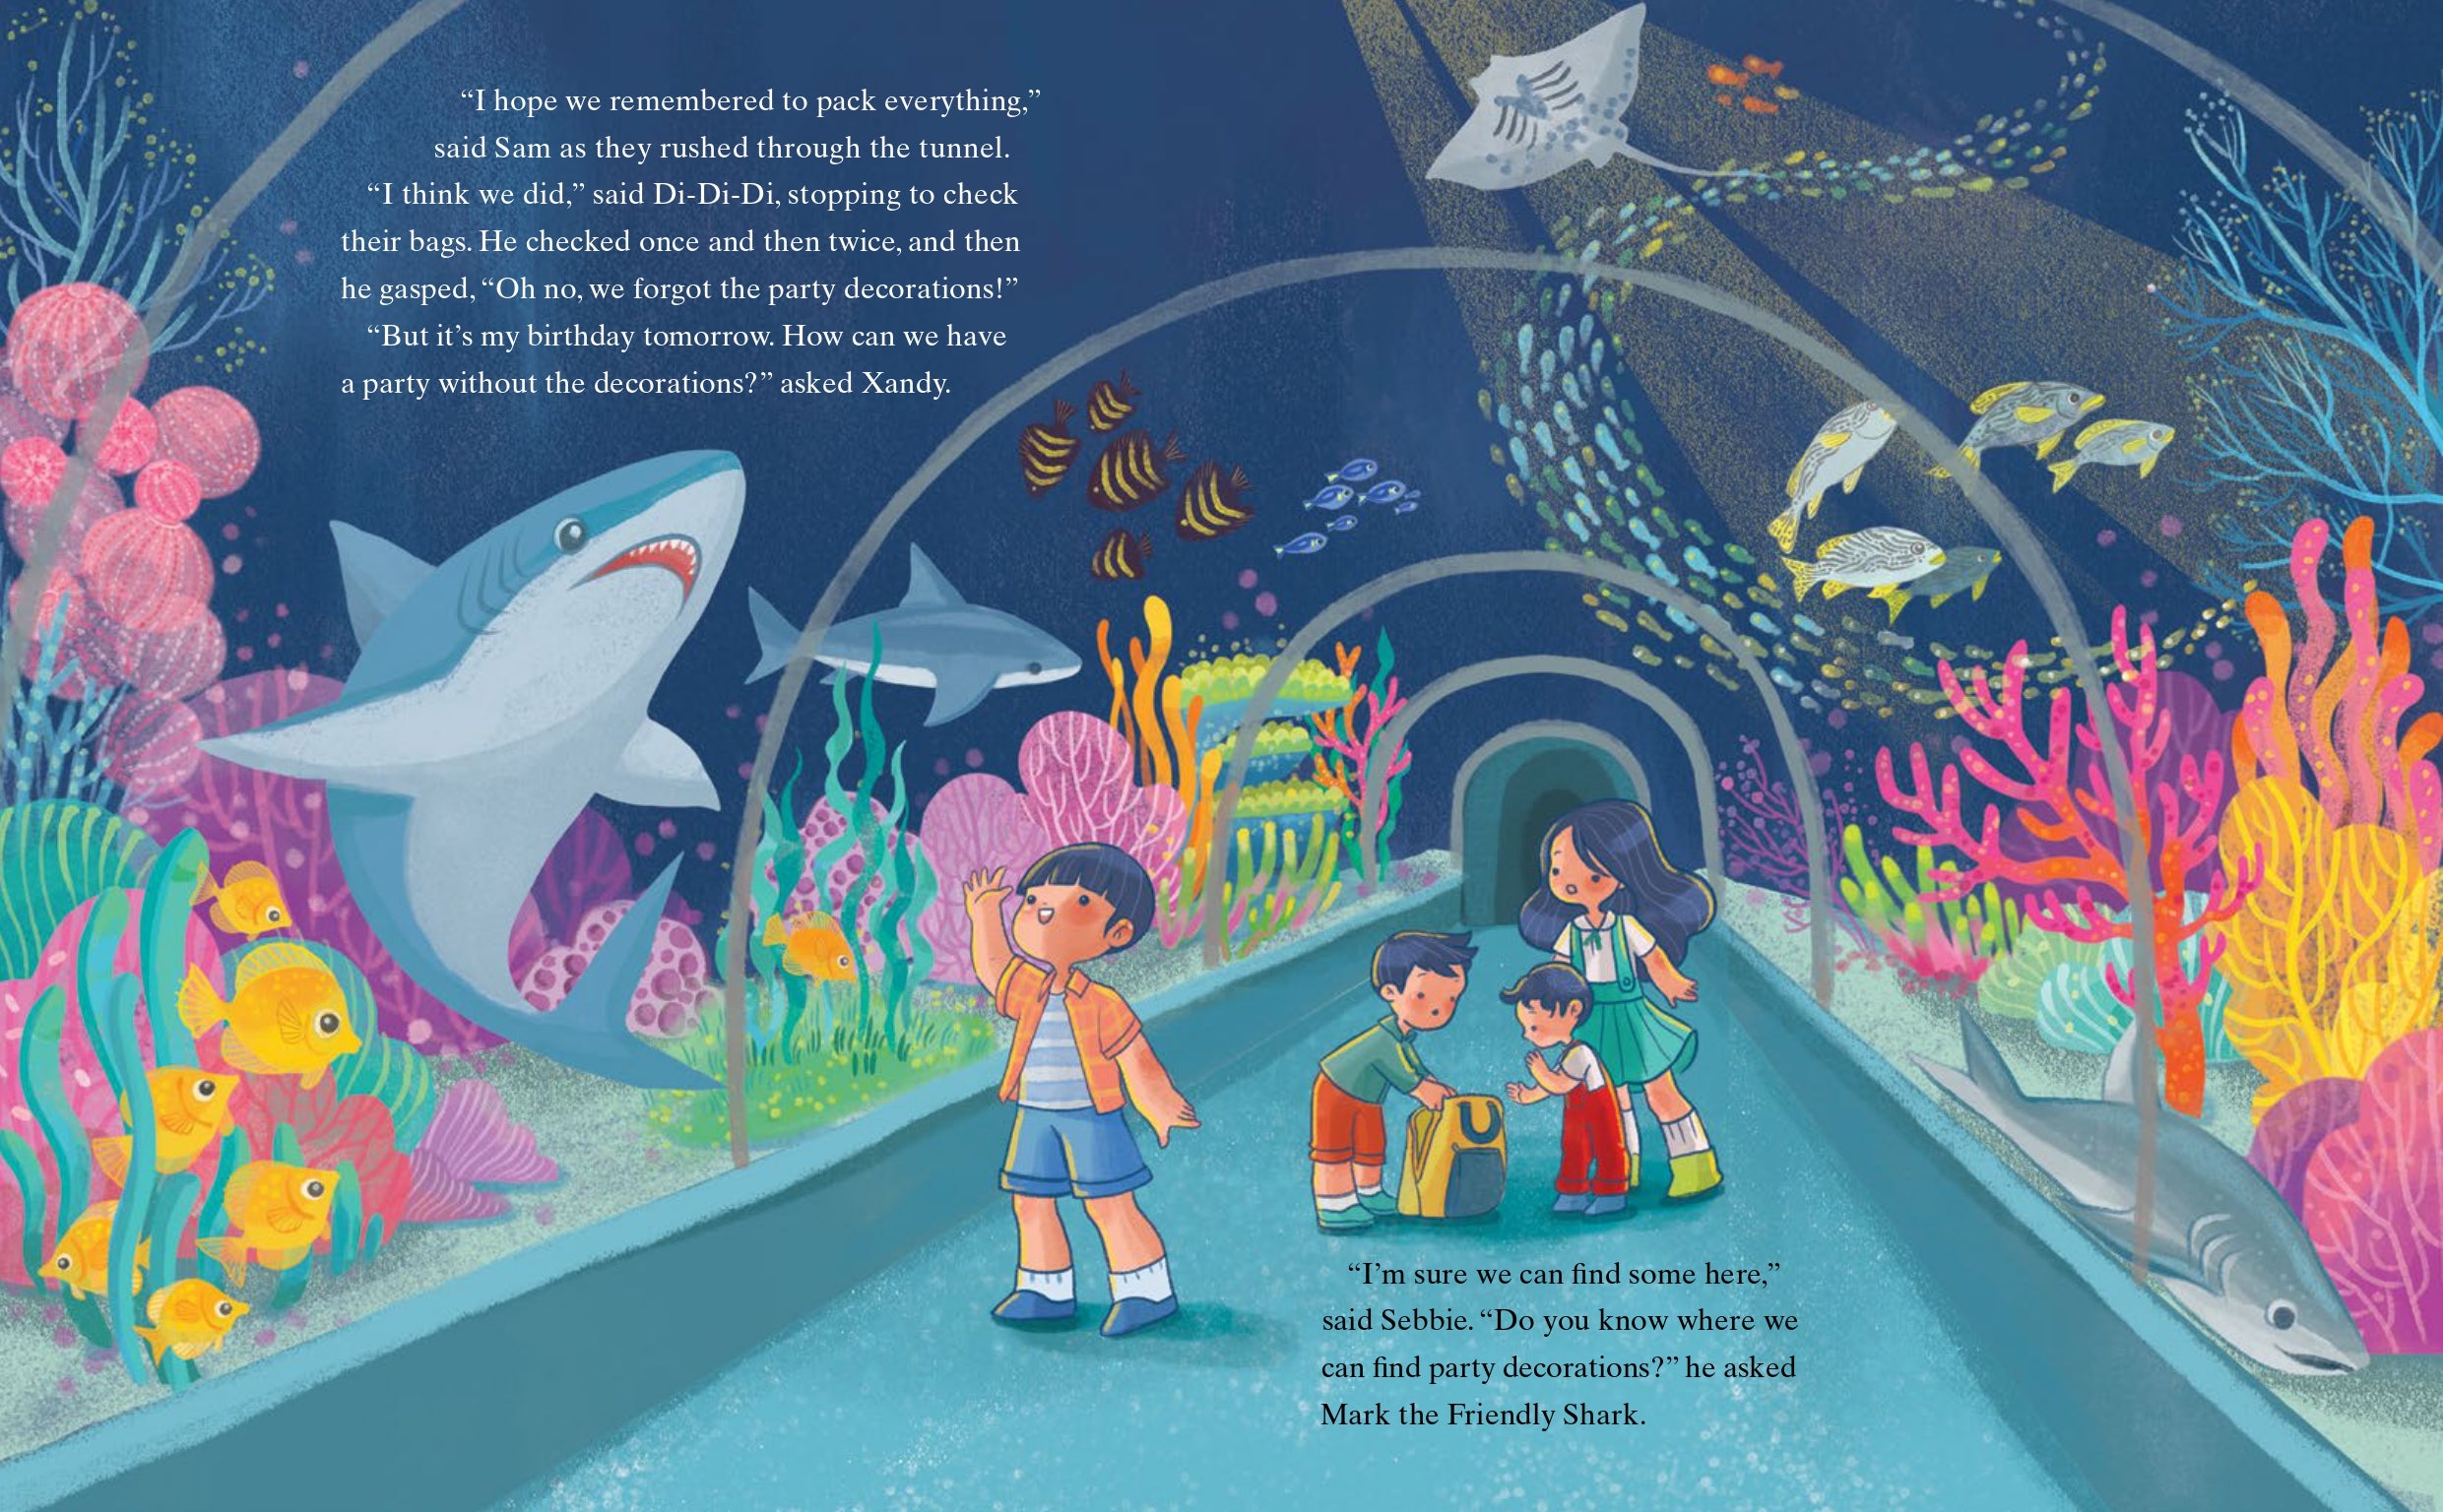 Sam, Sebbie and Di-Di-Di & Xandy: Return to the S.E.A. Aquarium (book 7)